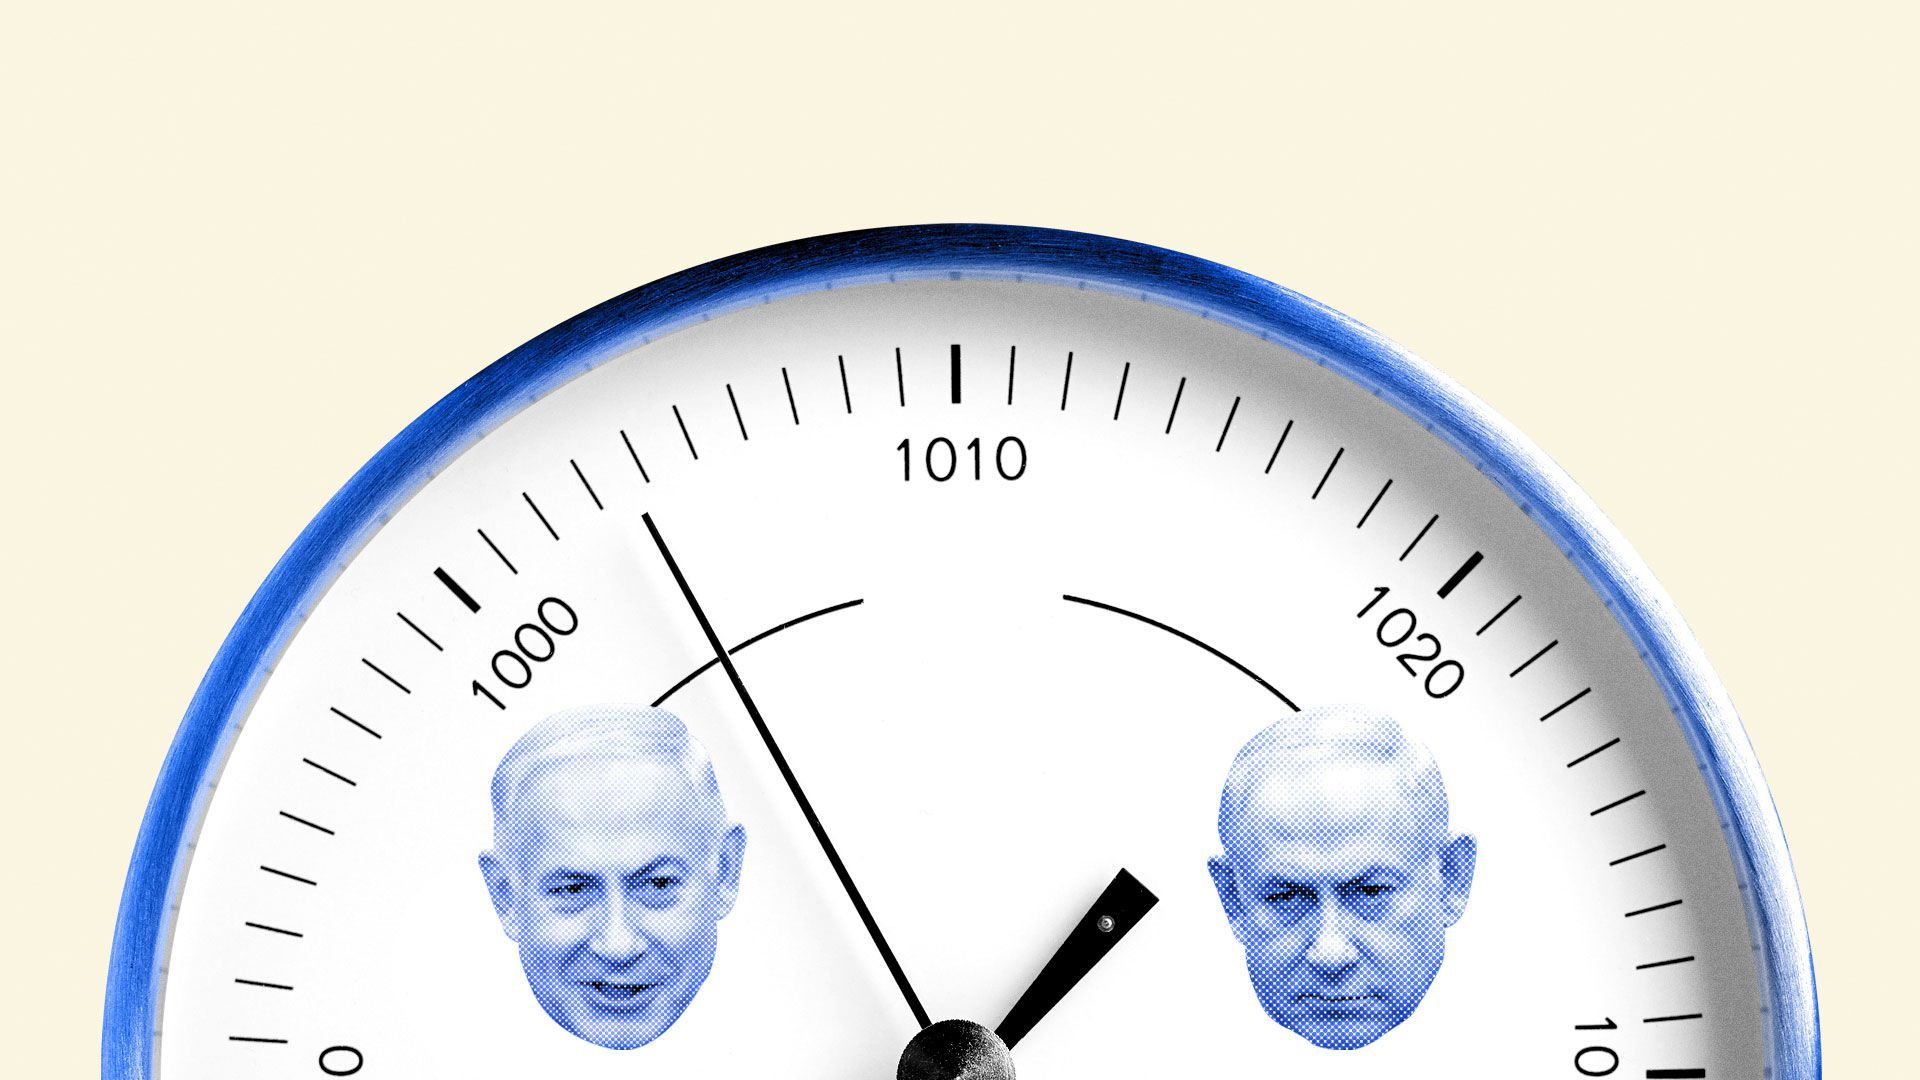 Illustration of Benjamin Netanyahu barometer